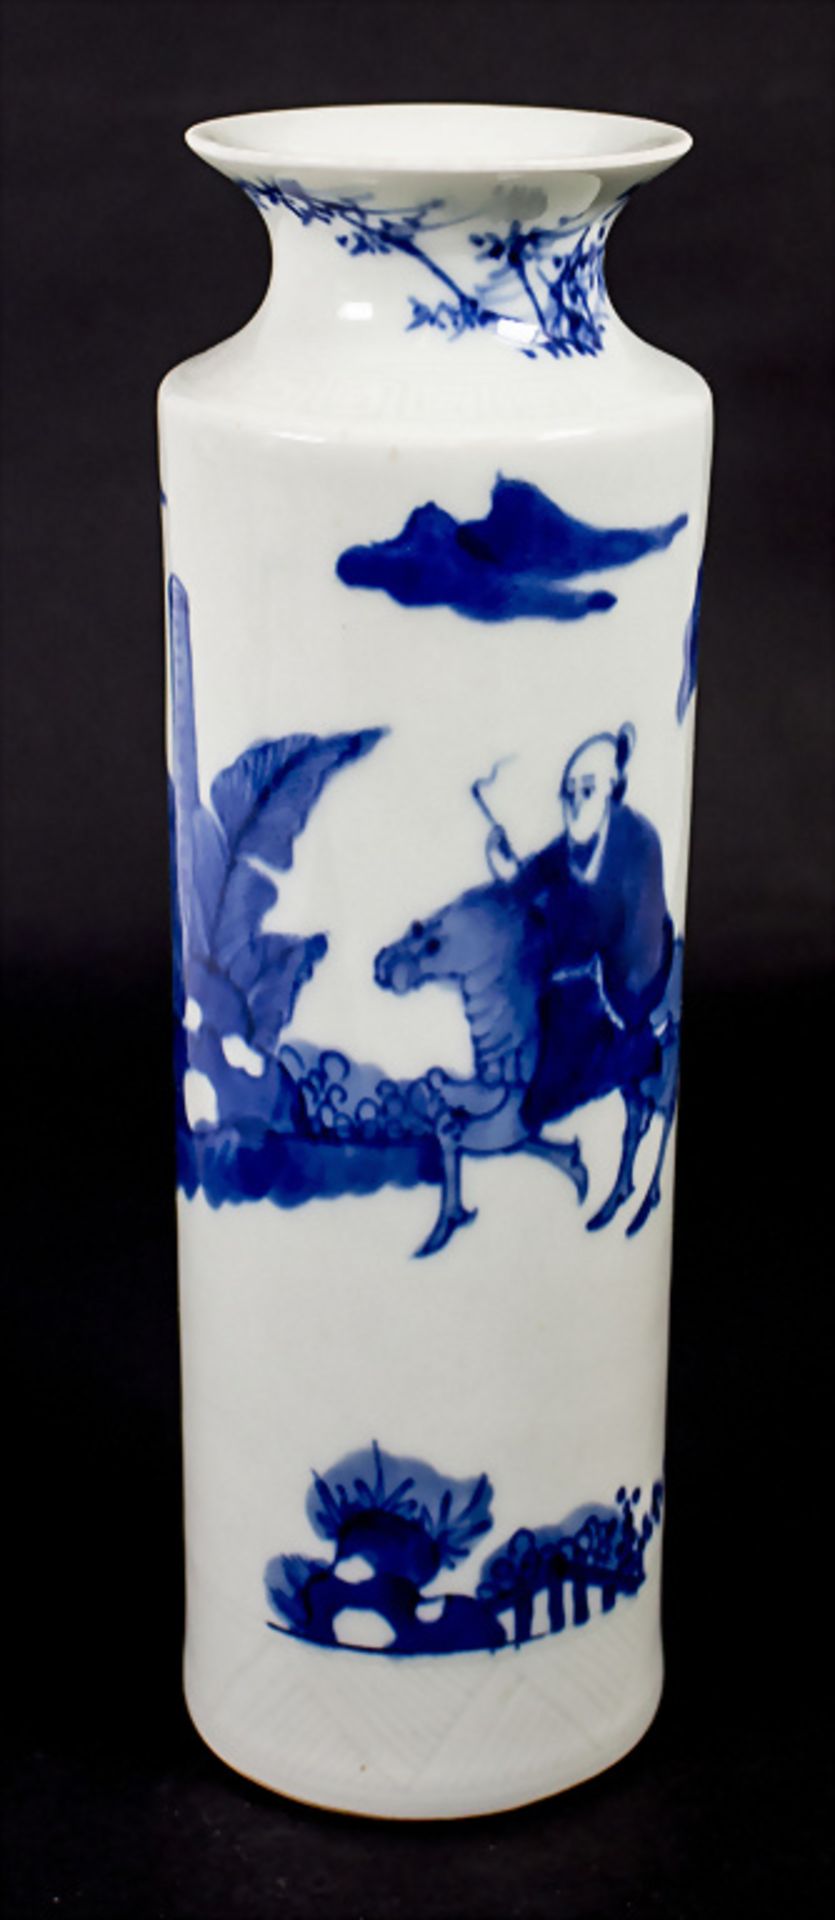 Ziervase / A decorative vase, China, Qing Dynastie (1644-1911) - Bild 4 aus 7